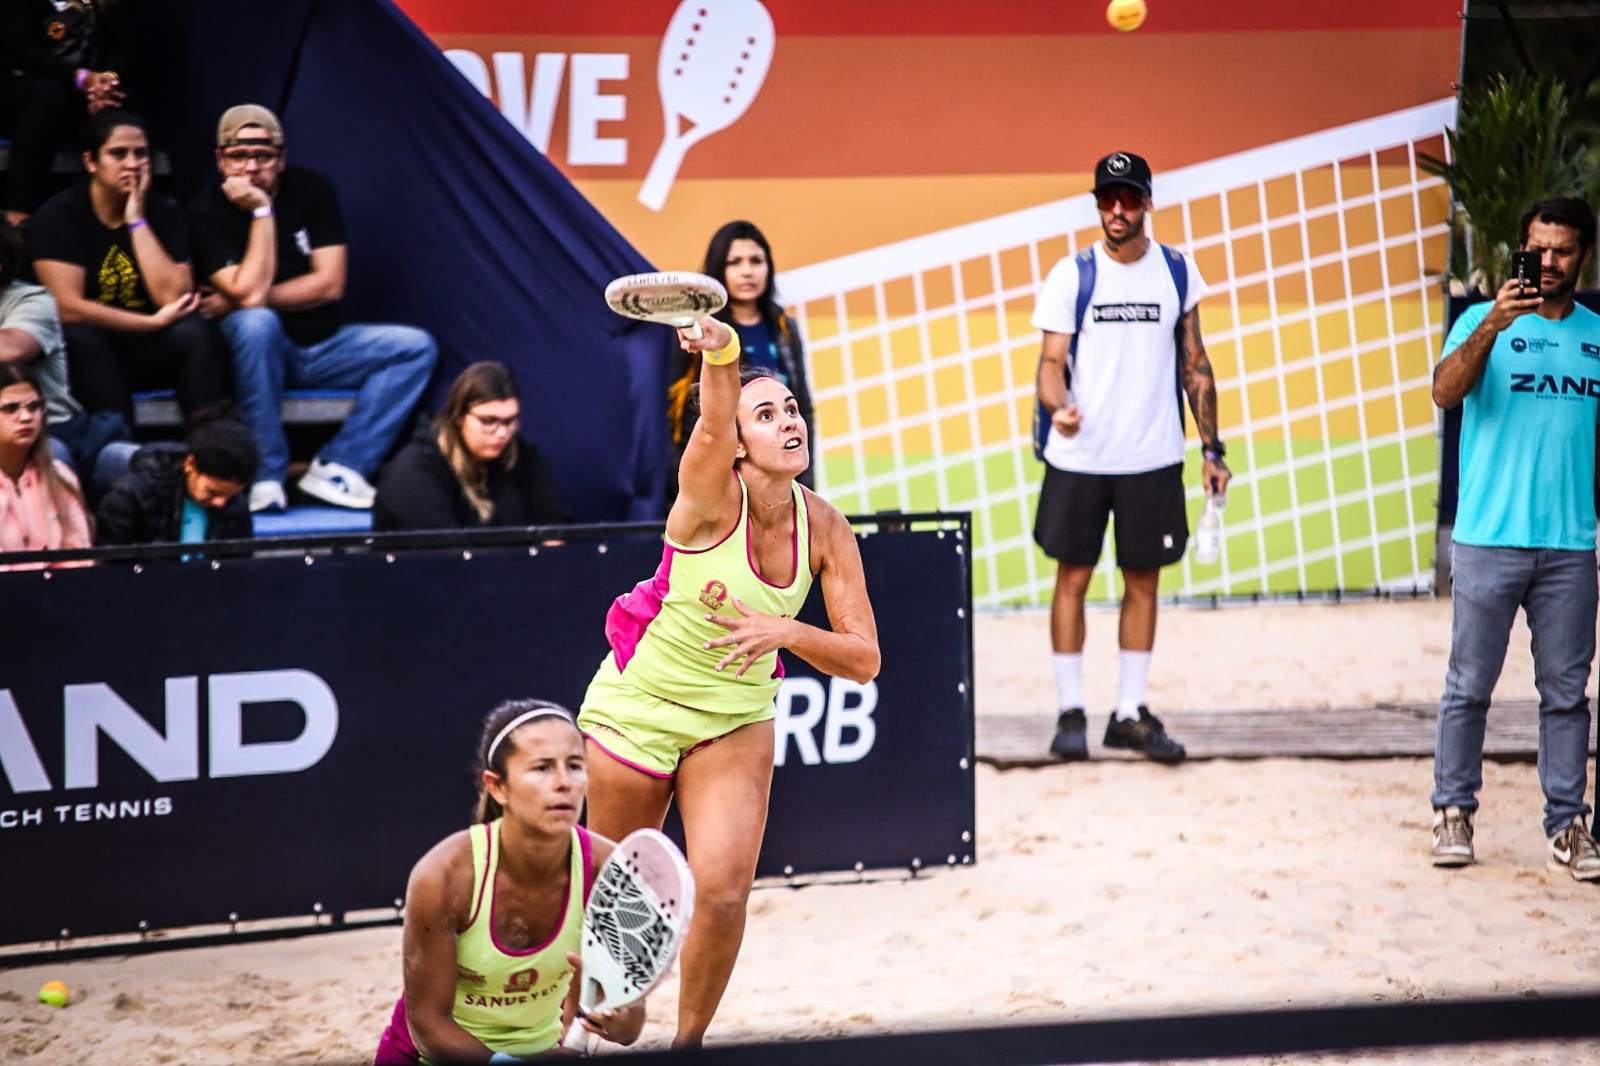  Atuais campeãs mundiais, brasileira Rafaella Miiller e venezuelana Patrícia Diaz buscarão o título no Sand Series de Valinhos (SP) e o topo do ranking